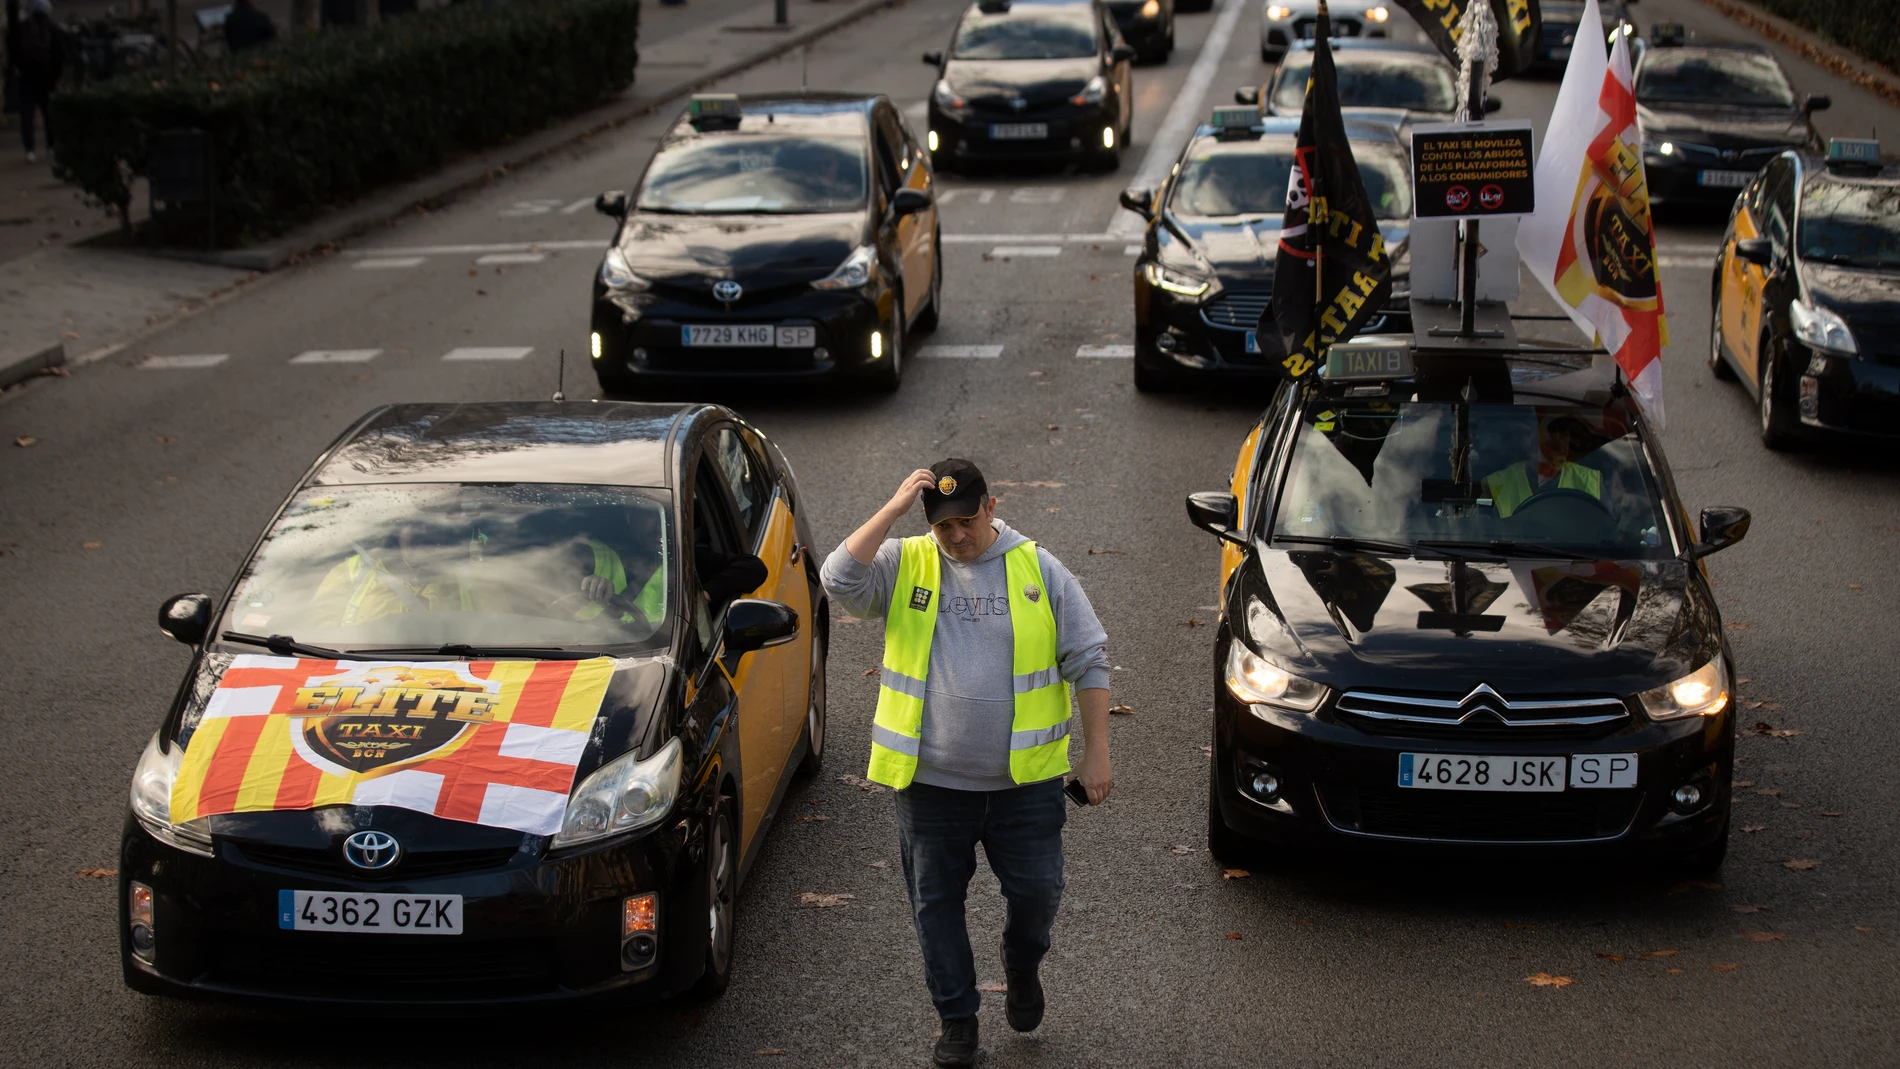 Economía.- Élite Taxi llevará la sanción de Competencia de Cataluña a la justicia y dice que las calles "arderán"